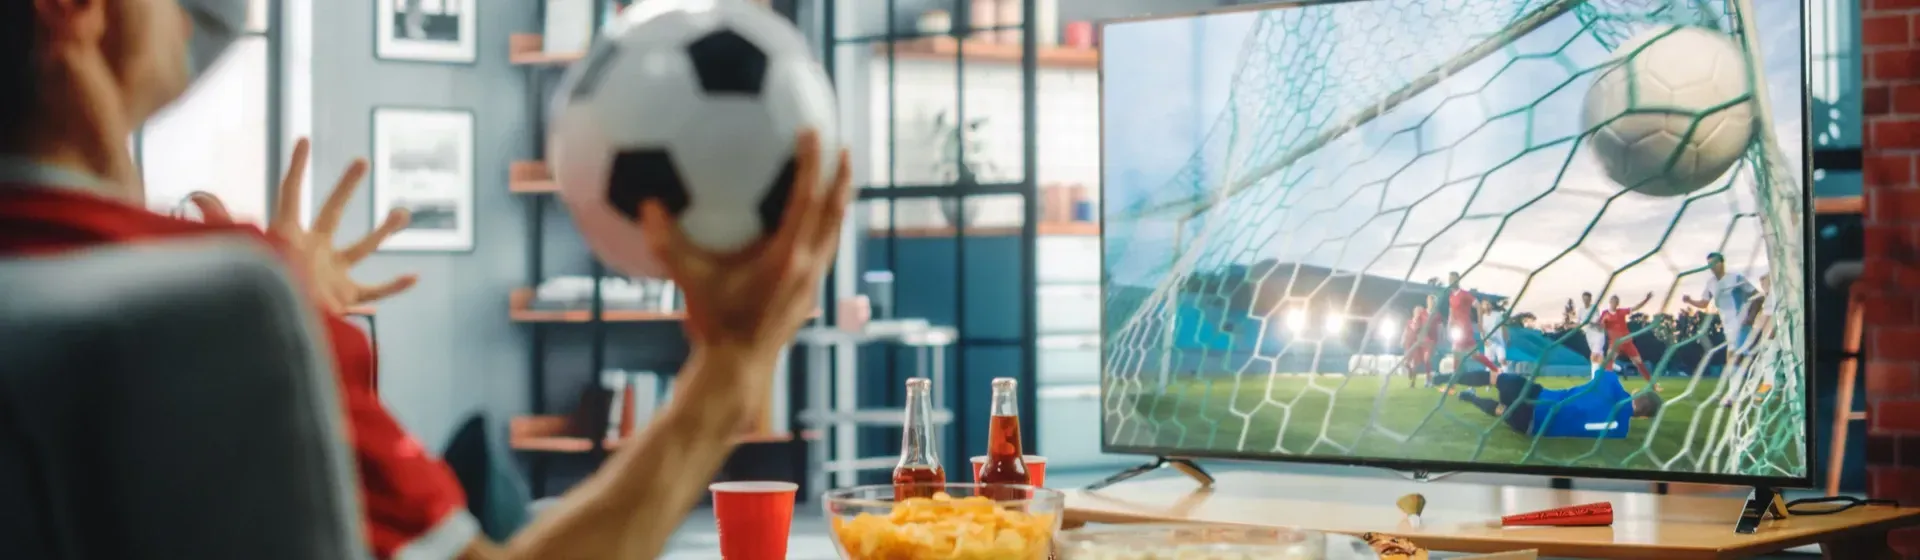 4 jogos online para se tornar uma star do futebol - TV Gazeta - Você por  perto. Tudo certo!